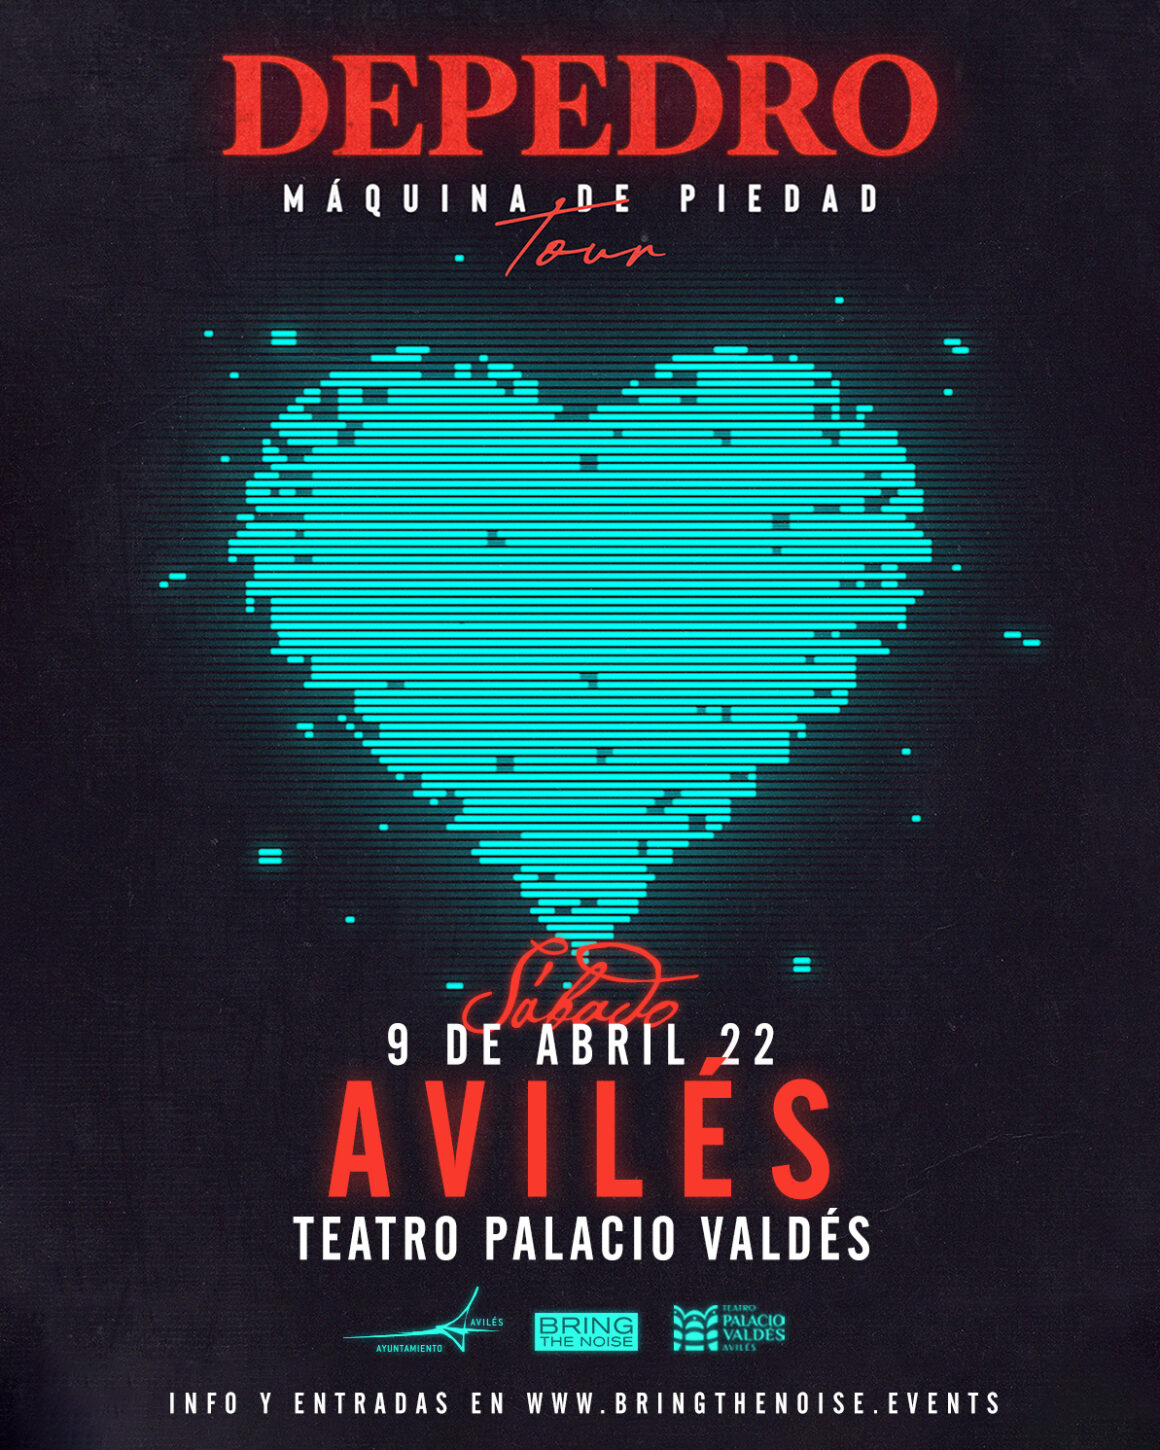 Depedro presentará su último trabajo: “Máquina de piedad” el sábado 9 de abril en el Teatro Palacio Valdés de Avilés